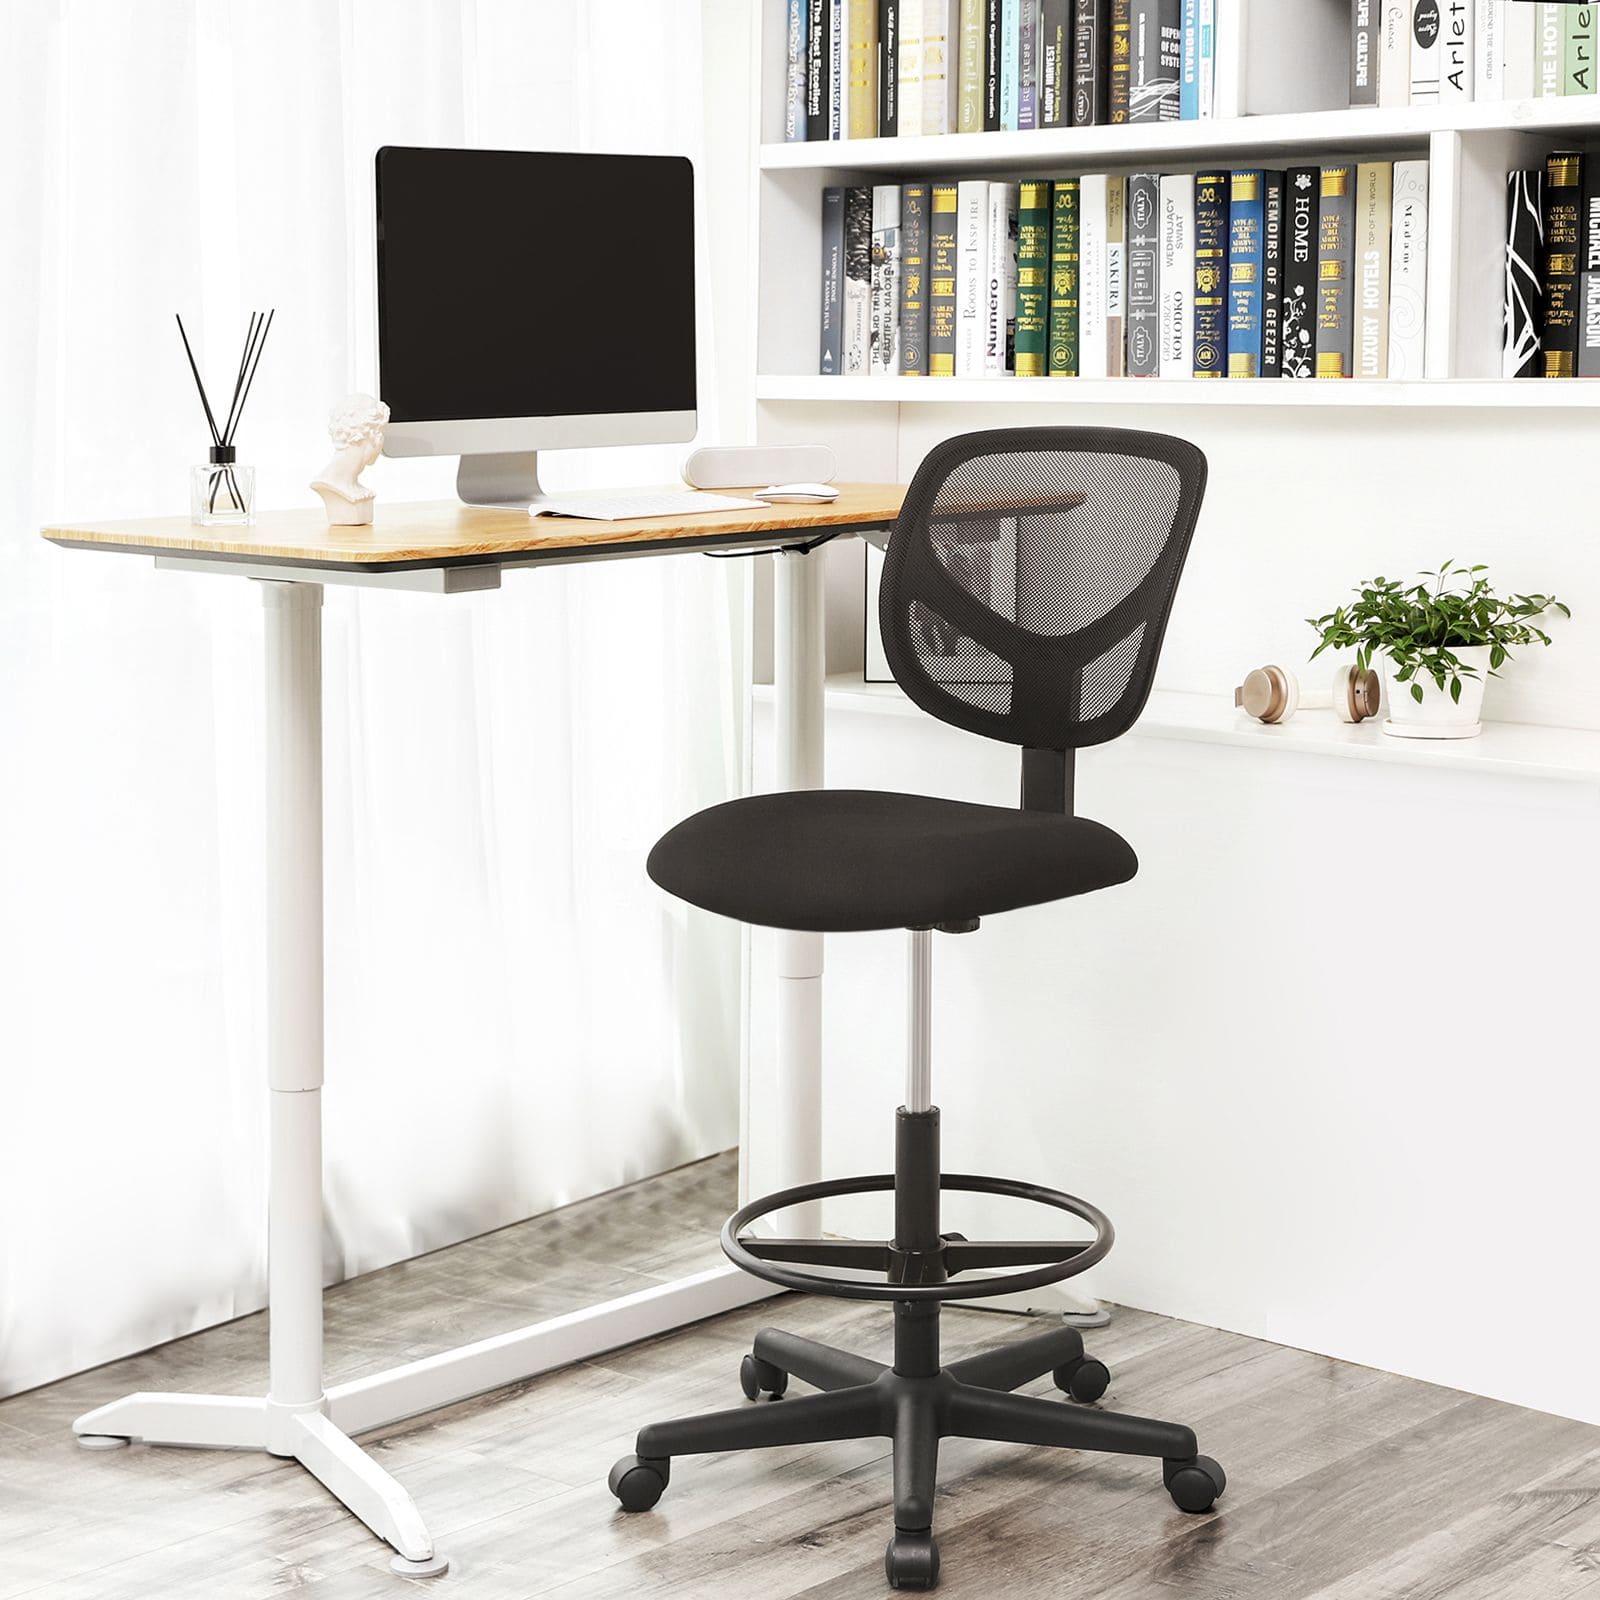 Bürostuhl, Ergonomischer Arbeitshocker, Sitzhöhe 51,5-71,5 cm, Hoher Arbeitsstuhl mit verstellbare Fußring, Belastbarkeit 120 kg